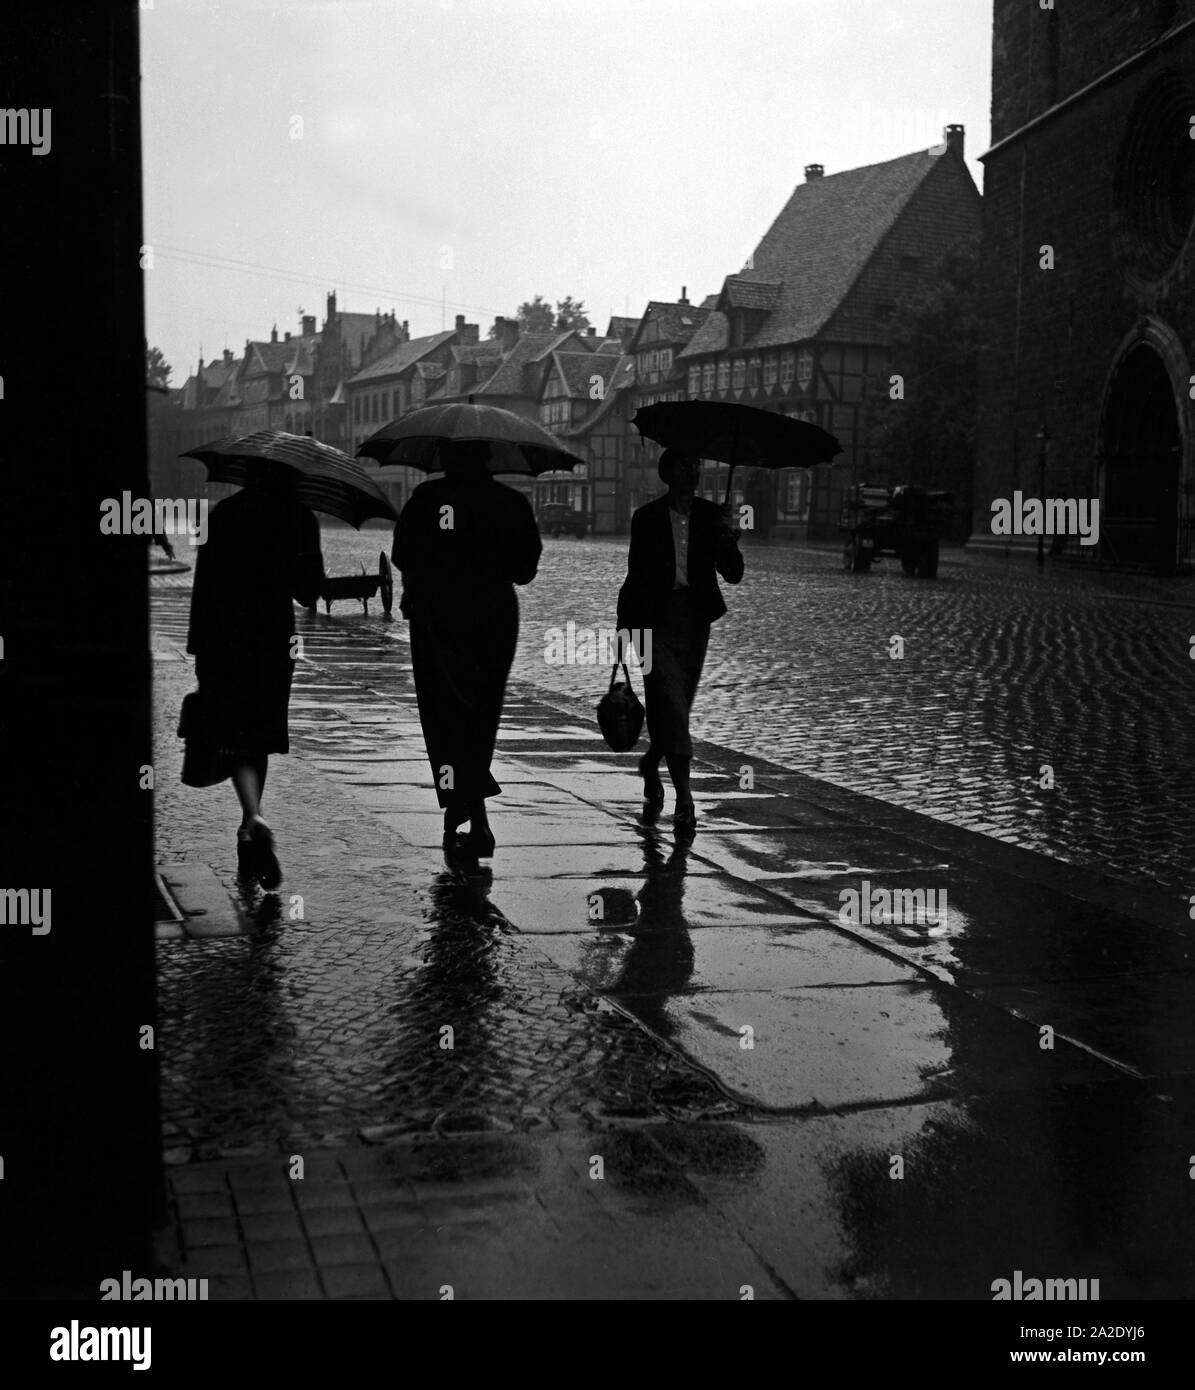 Drei Frauen gehen im Regen durch die Altstadt von Braunschweig, Deutschland 1930er Jahre. Tre donne camminando sotto la pioggia attraverso la vecchia città di Braunschweig, Germania 1930s. Foto Stock